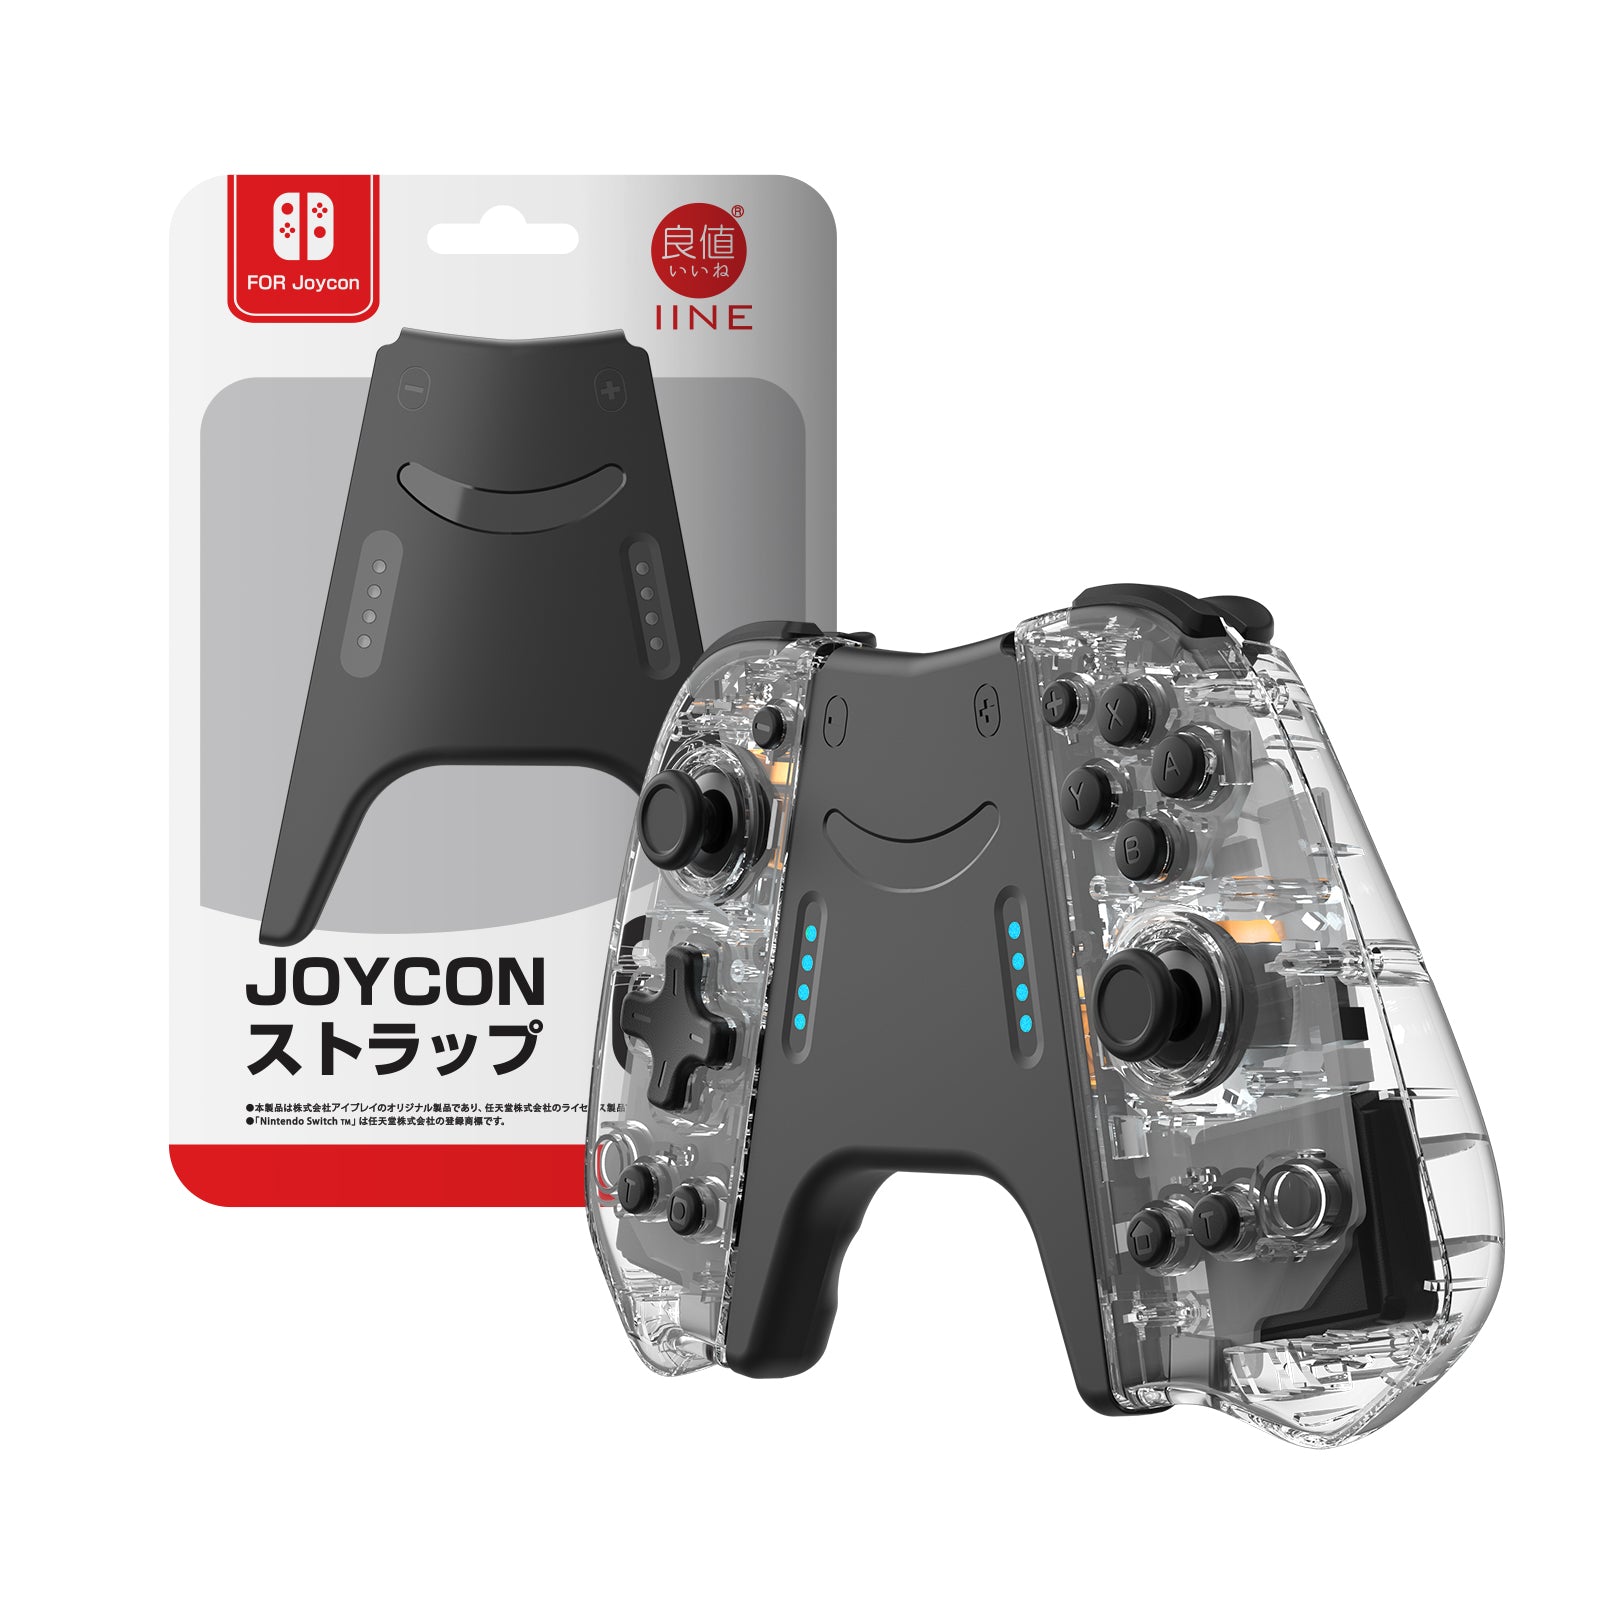 IINE Nintendo Switch Elite Joypad – IINE Official Store